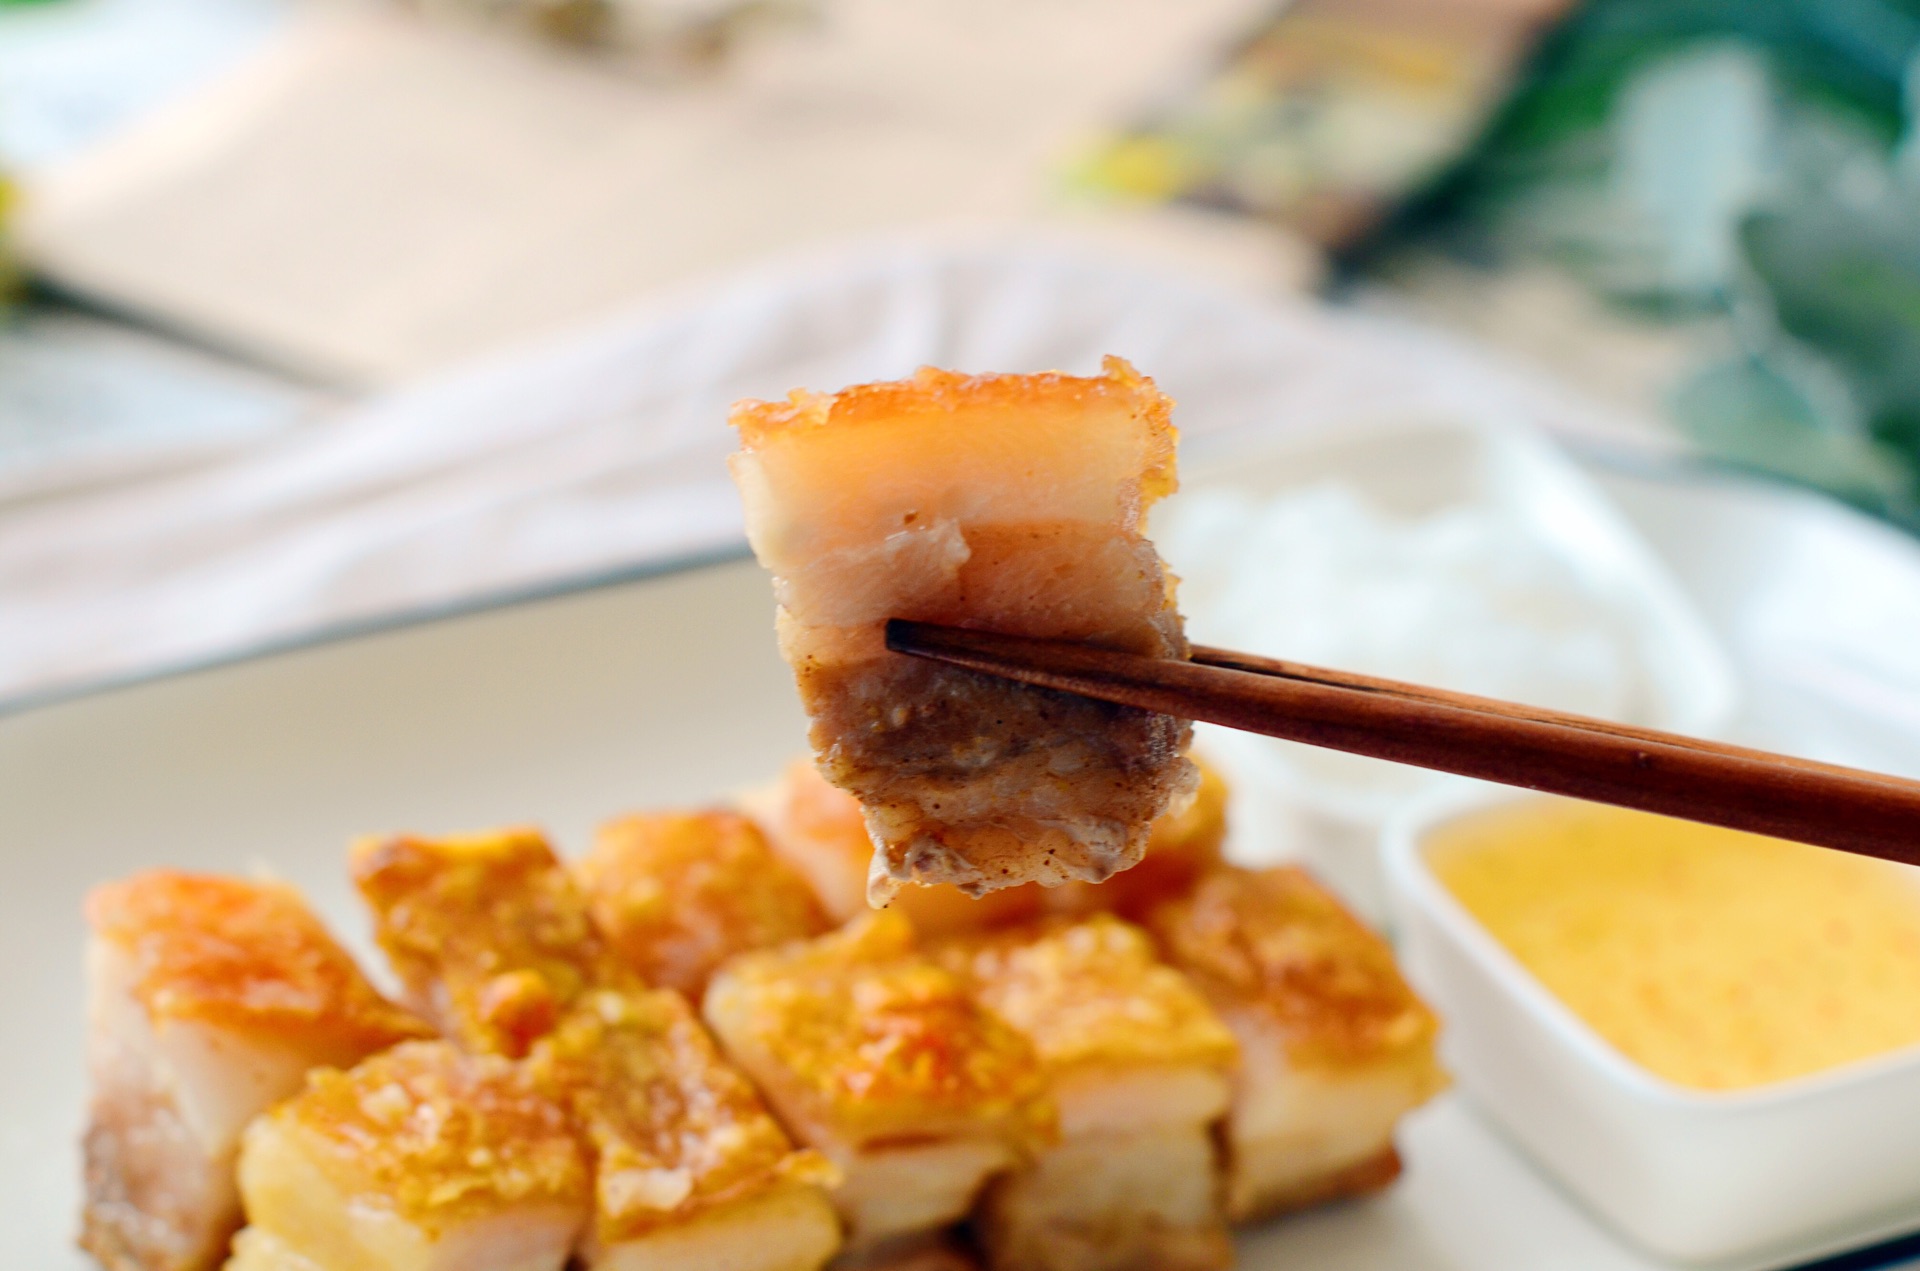 脆皮烧肉 Roasted Pork Belly with Crispy Crackling - Nanyang Kitchen 南洋小厨